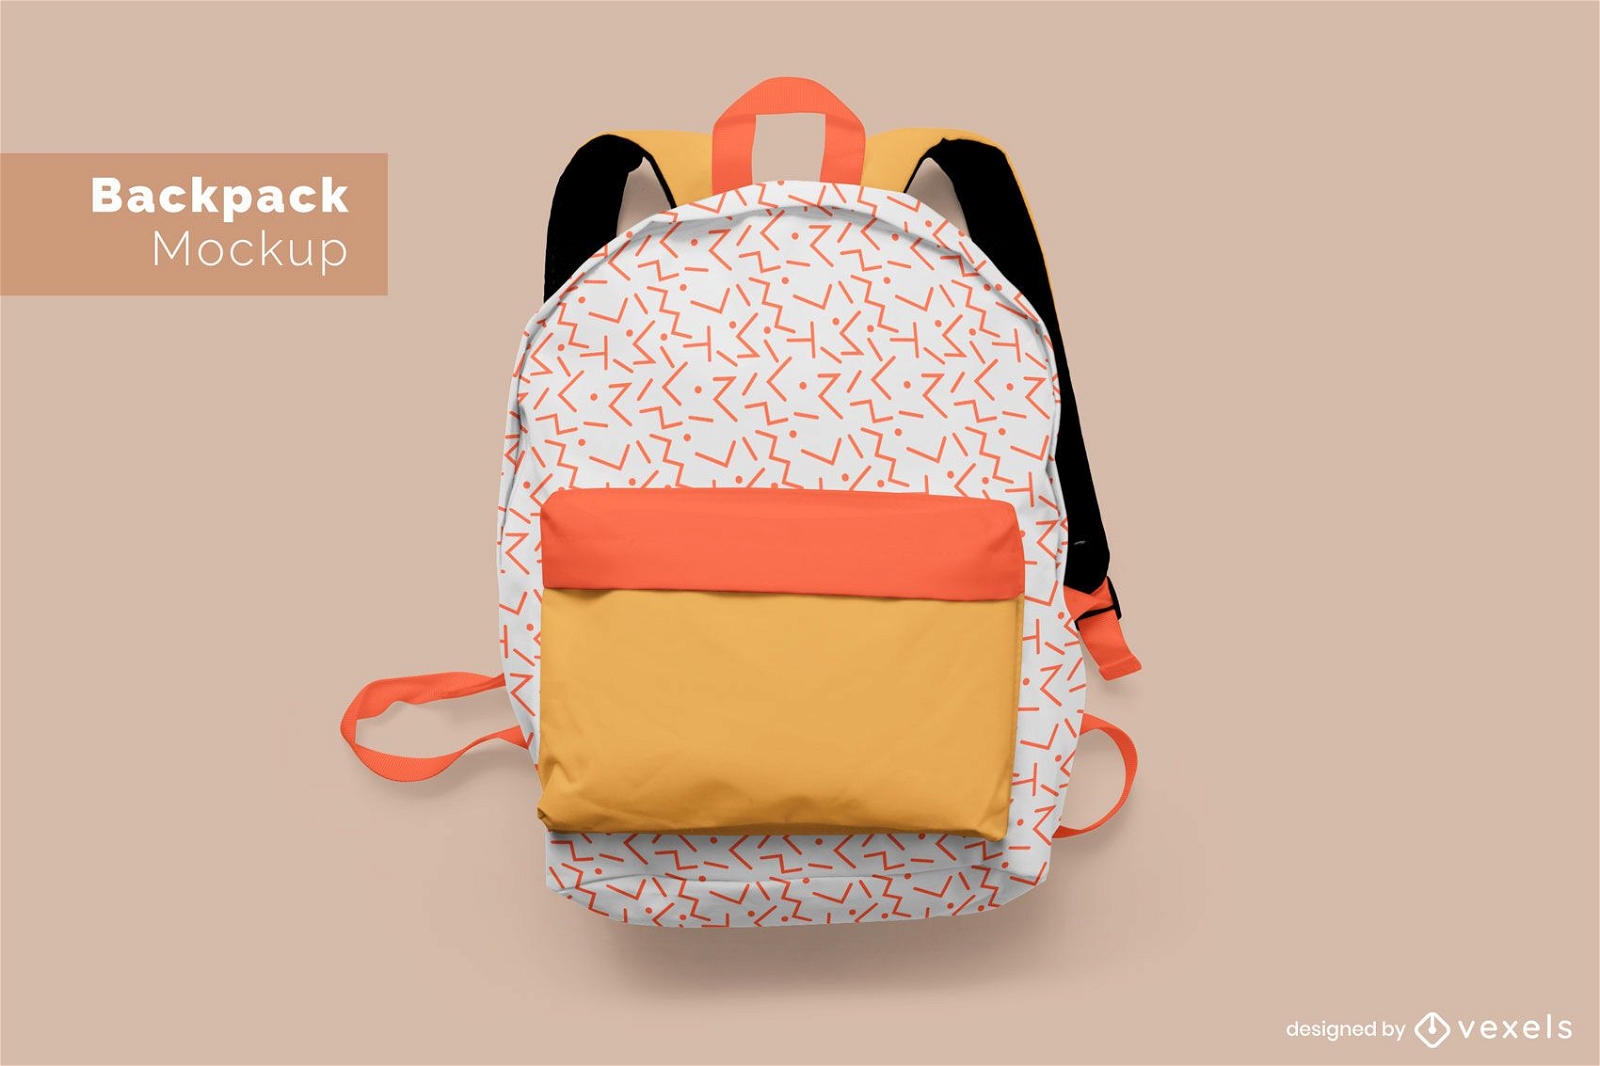 Details more than 84 school bag mockup best - in.duhocakina